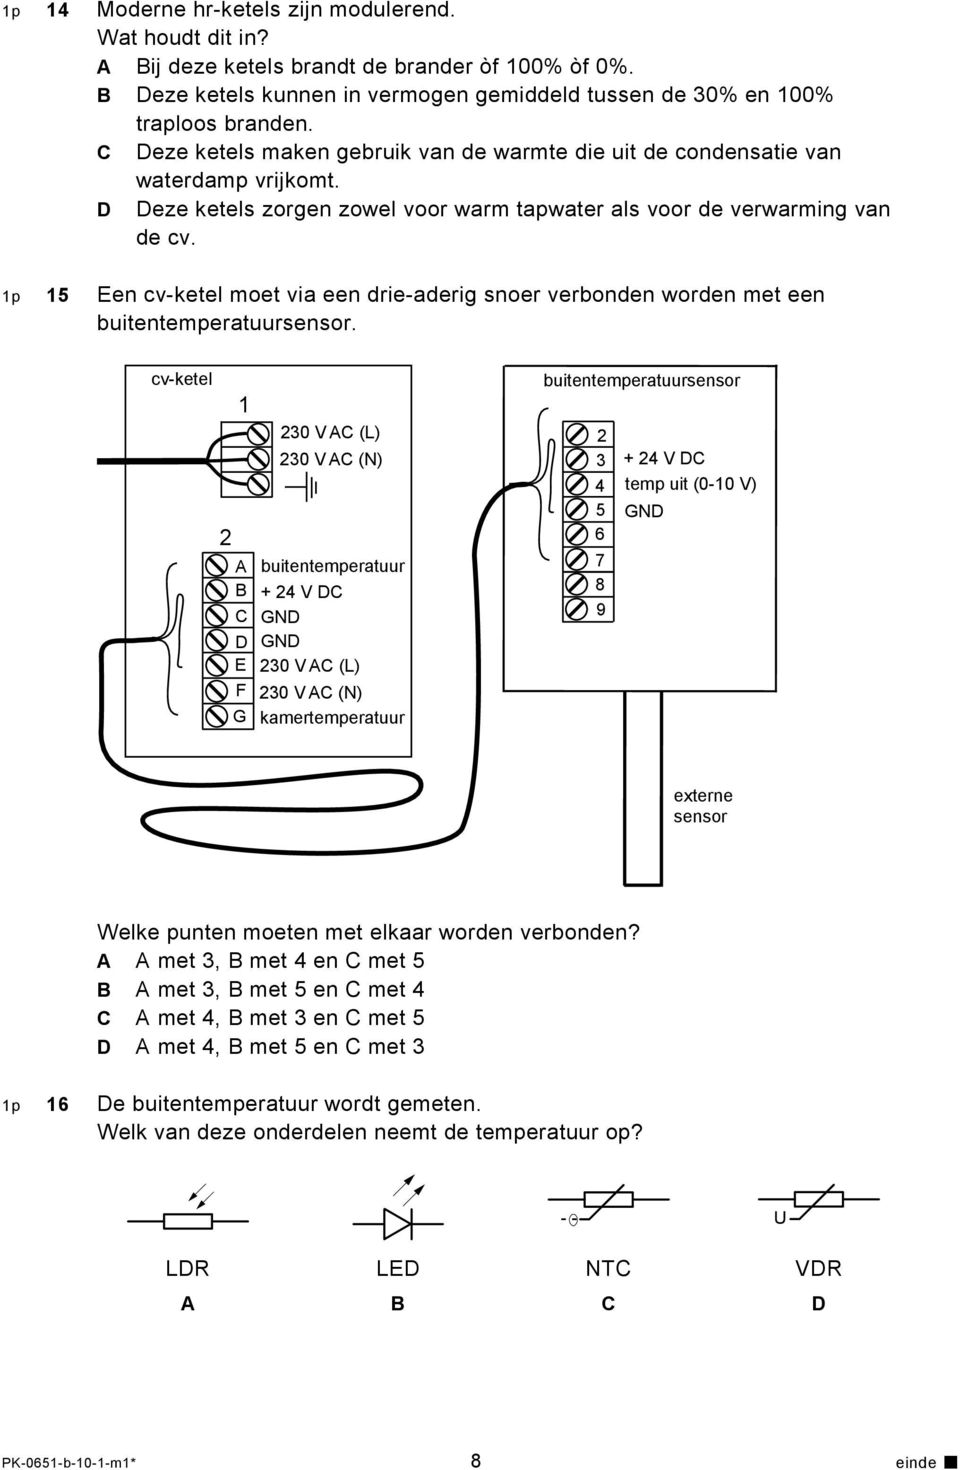 1p 15 Een cv-ketel moet via een drie-aderig snoer verbonden worden met een buitentemperatuursensor.